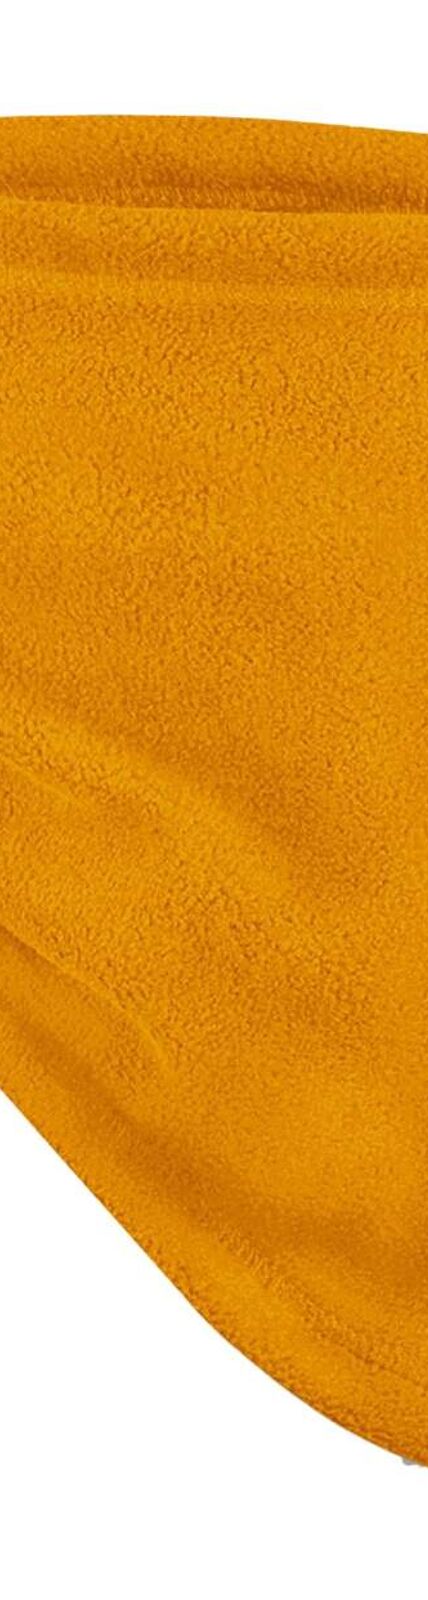 Beechfield Unisex Adult Fleece Recycled Snood (Mustard Yellow) (One Size) - UTRW8265